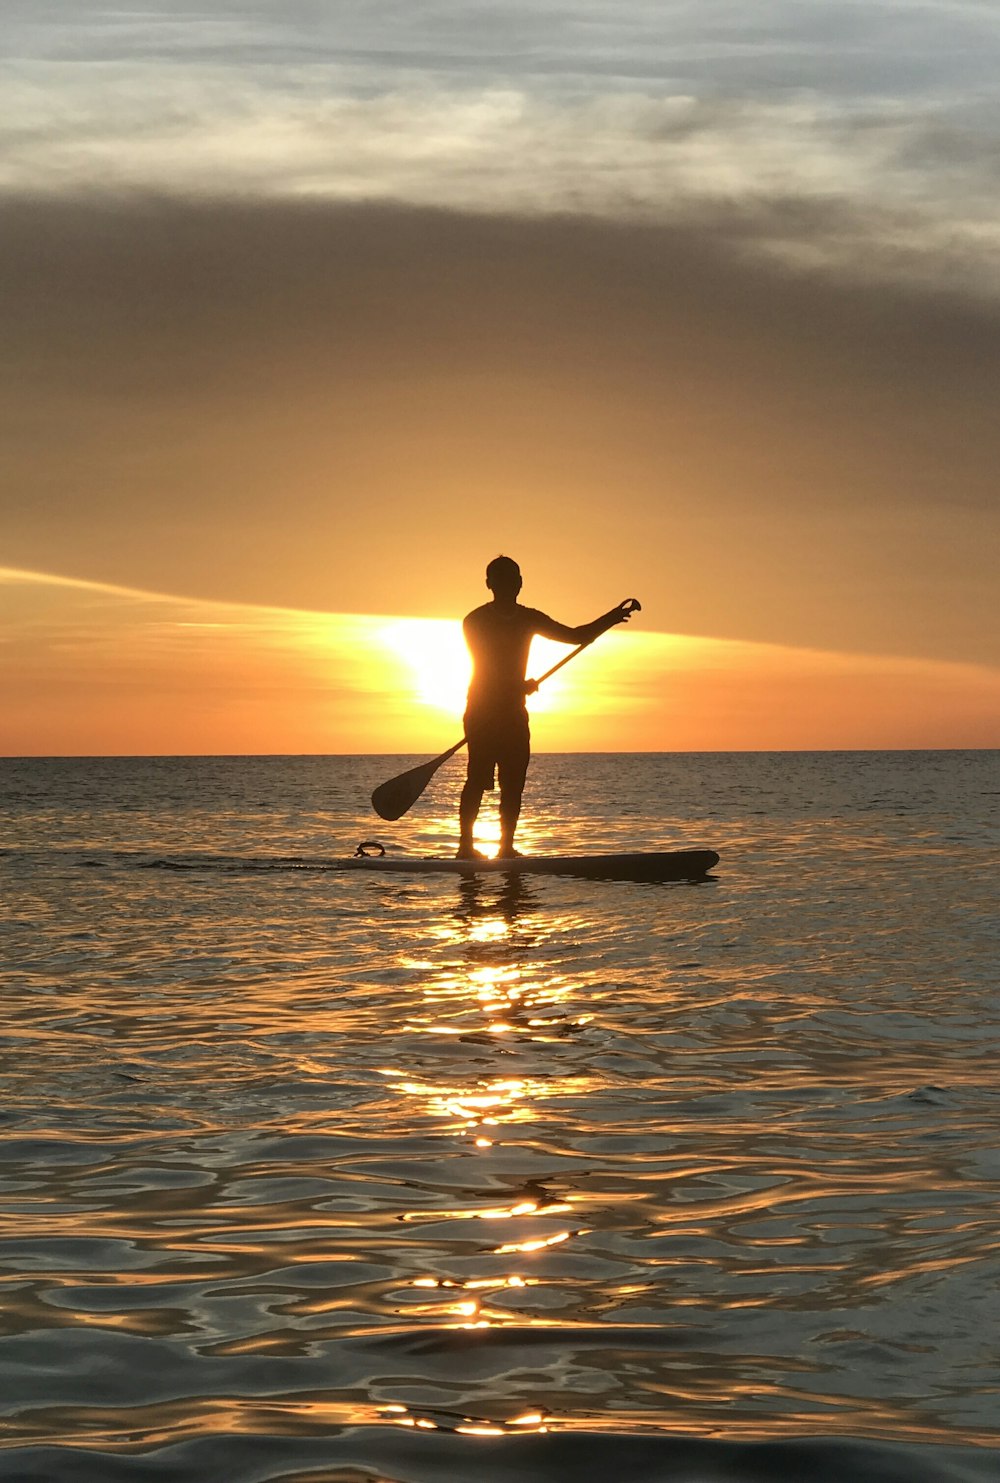 Persona en bote de remos durante la puesta de sol